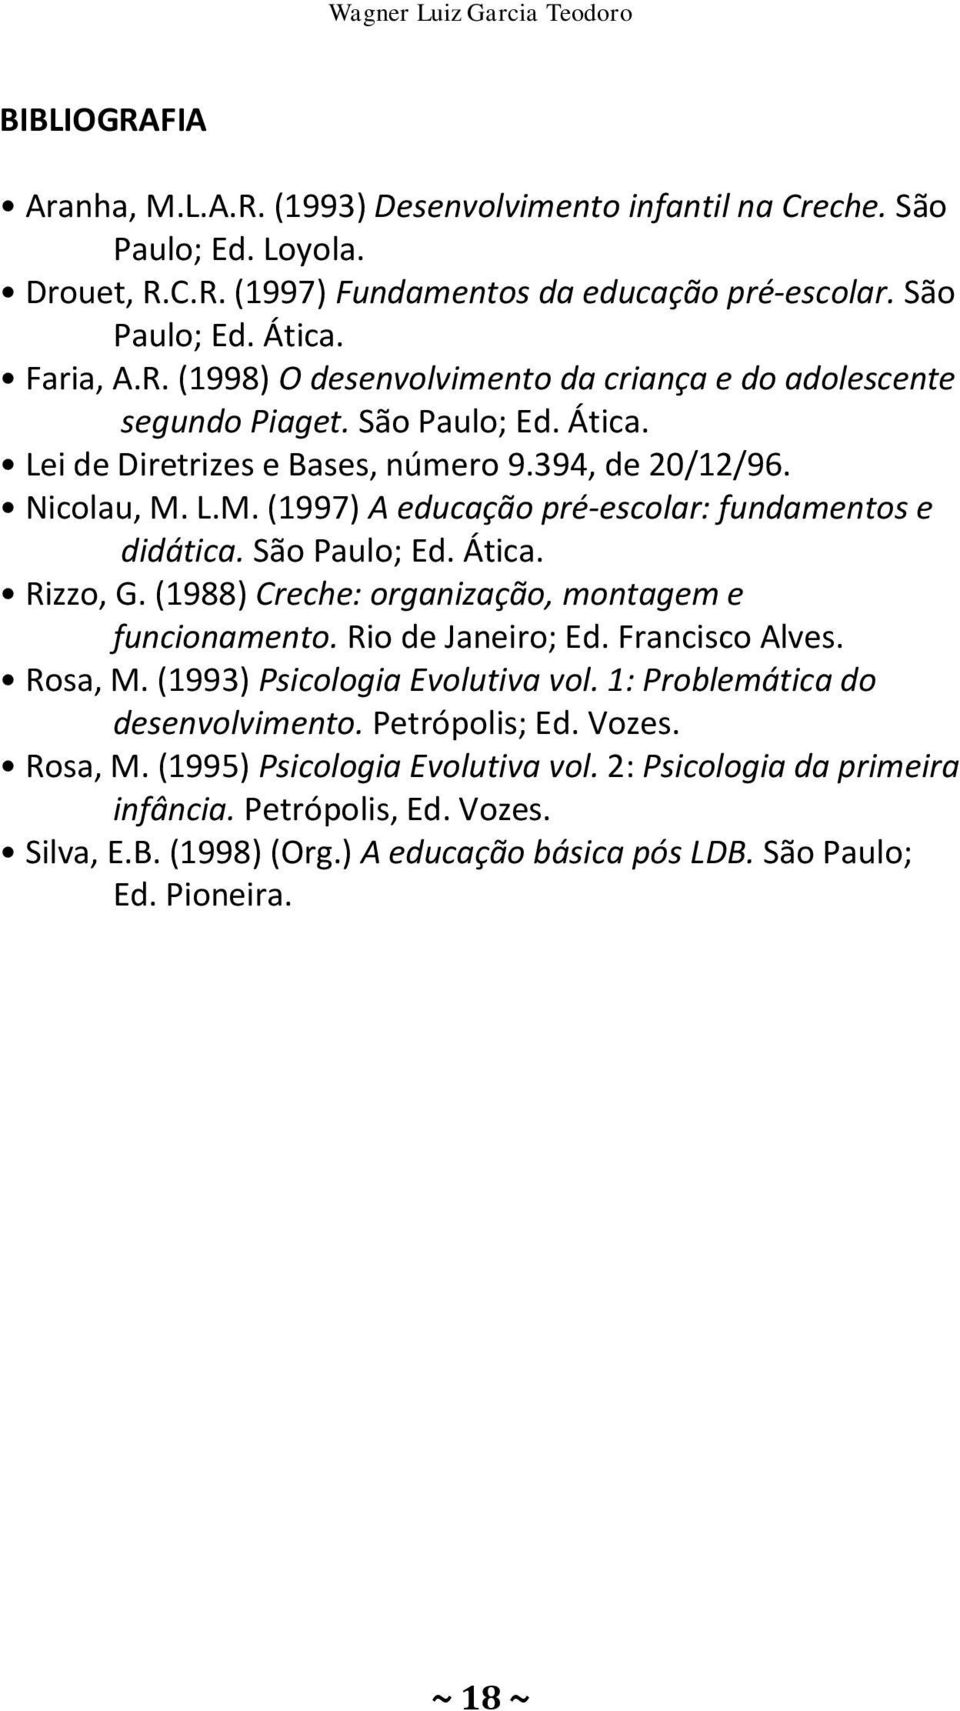 L.M. (1997) A educação pré-escolar: fundamentos e didática. São Paulo; Ed. Ática. Rizzo, G. (1988) Creche: organização, montagem e funcionamento. Rio de Janeiro; Ed. Francisco Alves. Rosa, M.